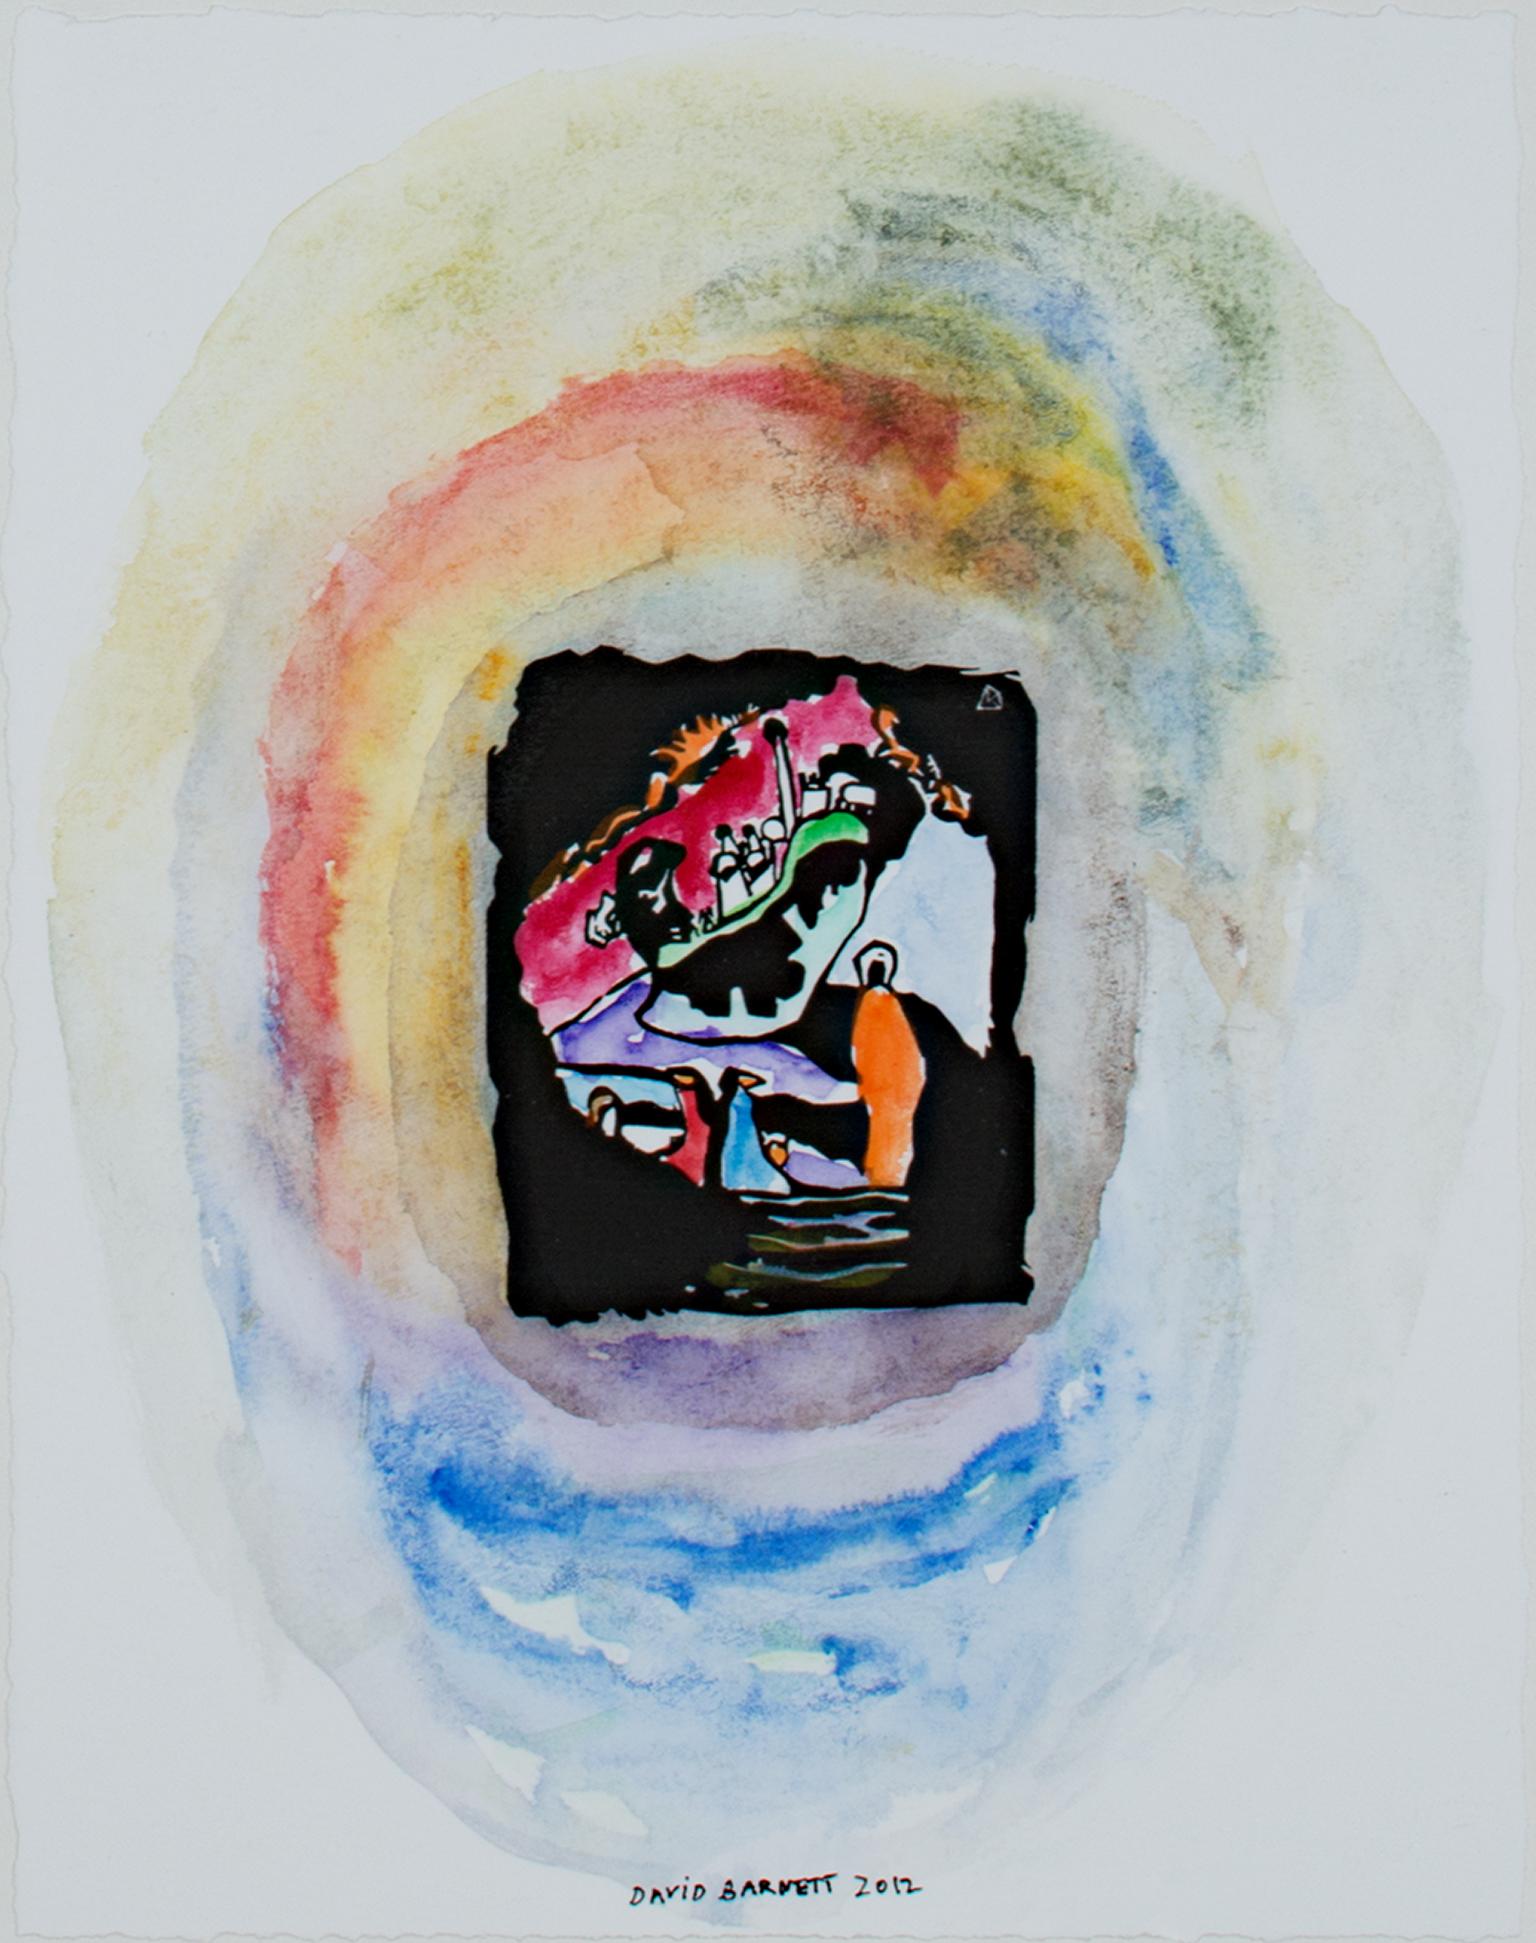 "Hommage an Wassily Kandinsky nach 1911 original Holzschnitt aus der Klänge Serie, Titel: Landscape with More Upright White Figure" ist ein Original-Mixed-Media-Werk von David Barnett, signiert unten in der Mitte. Dieses und die anderen Werke der